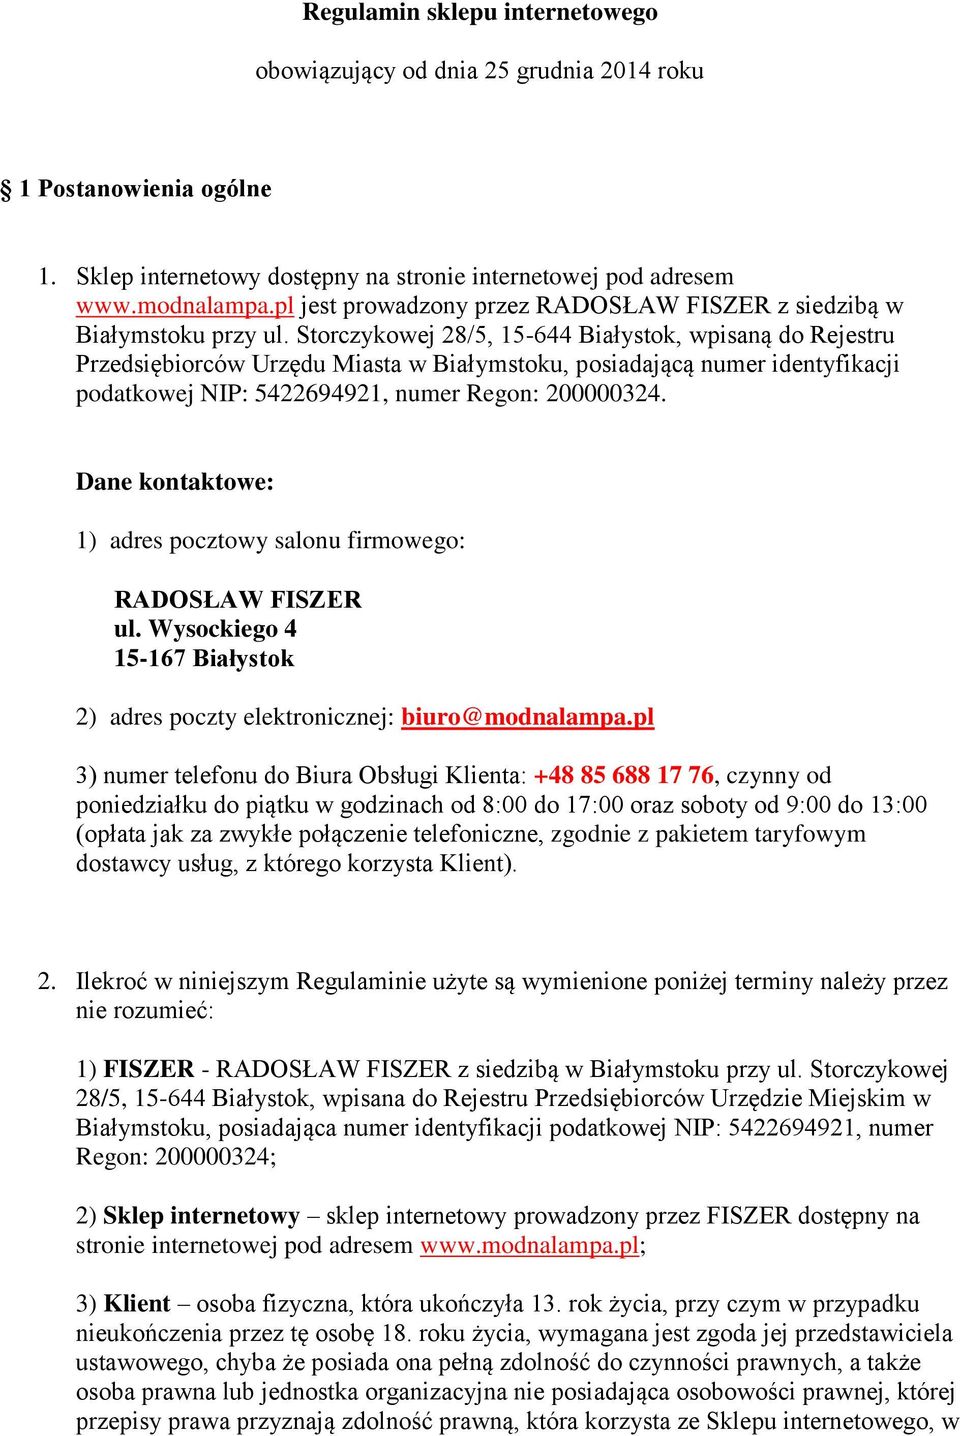 Storczykowej 28/5, 15-644 Białystok, wpisaną do Rejestru Przedsiębiorców Urzędu Miasta w Białymstoku, posiadającą numer identyfikacji podatkowej NIP: 5422694921, numer Regon: 200000324.